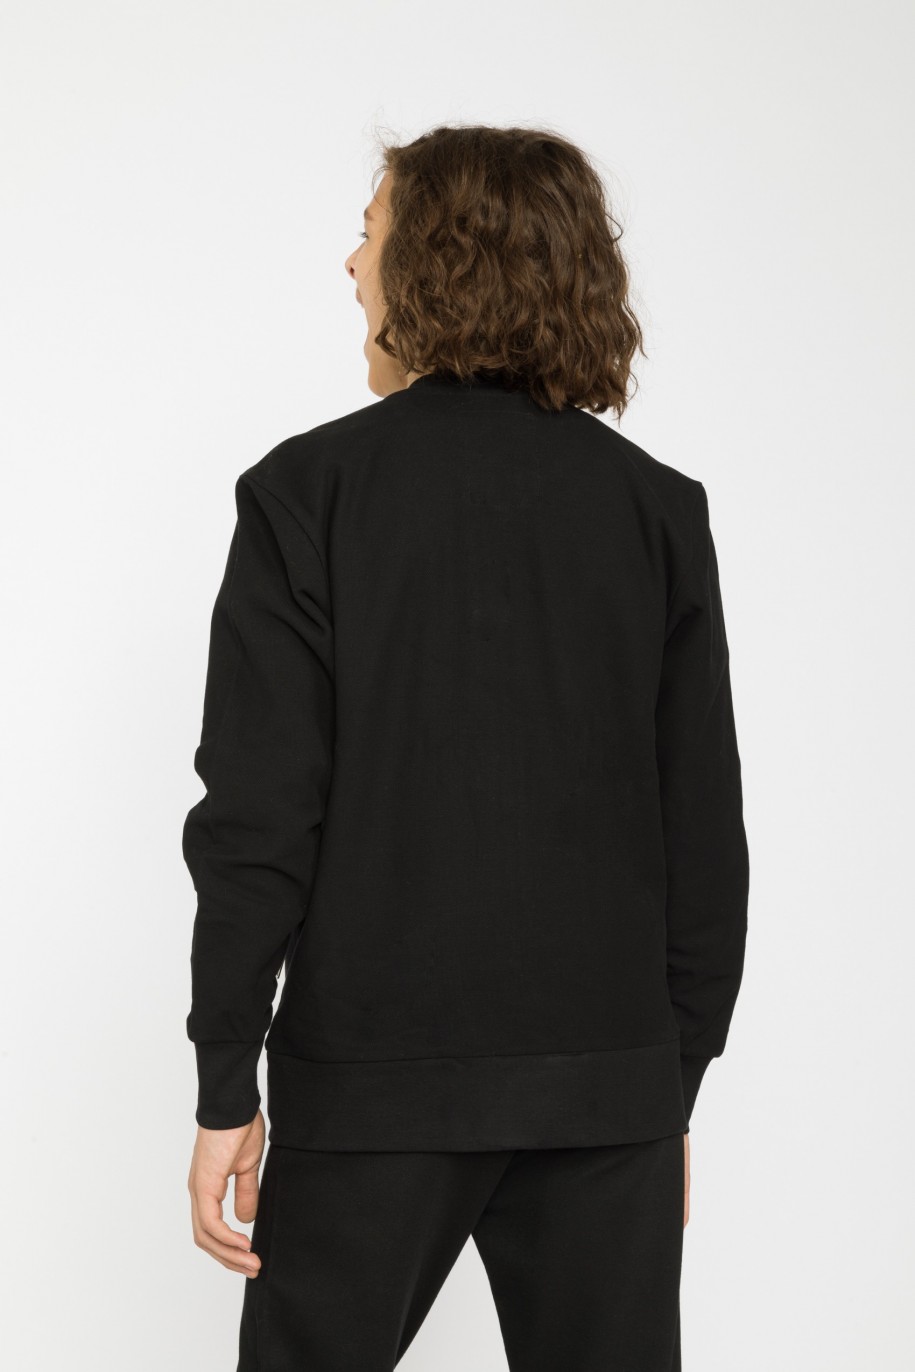 Czarna rozpinana bluza z dla chłopaka z ozdobnymi zamkami - 29592